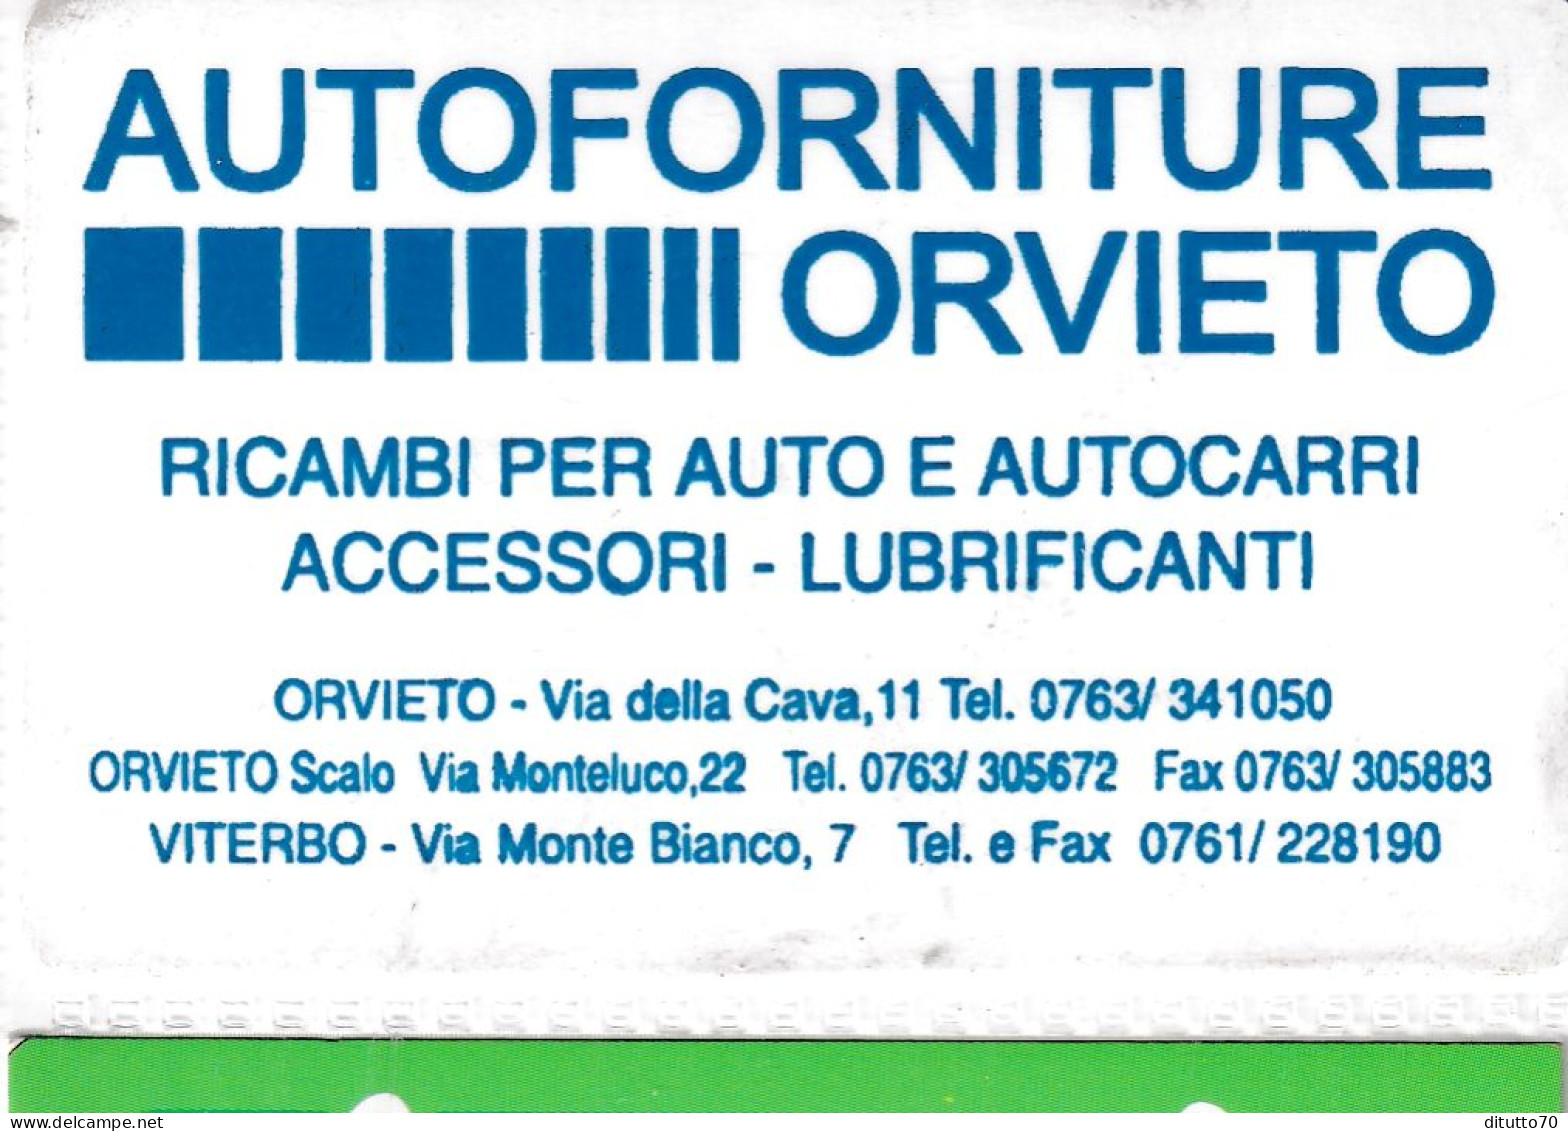 Calendarietto - Autoforniture - Orvieto - Anno 1997 - Small : 1991-00